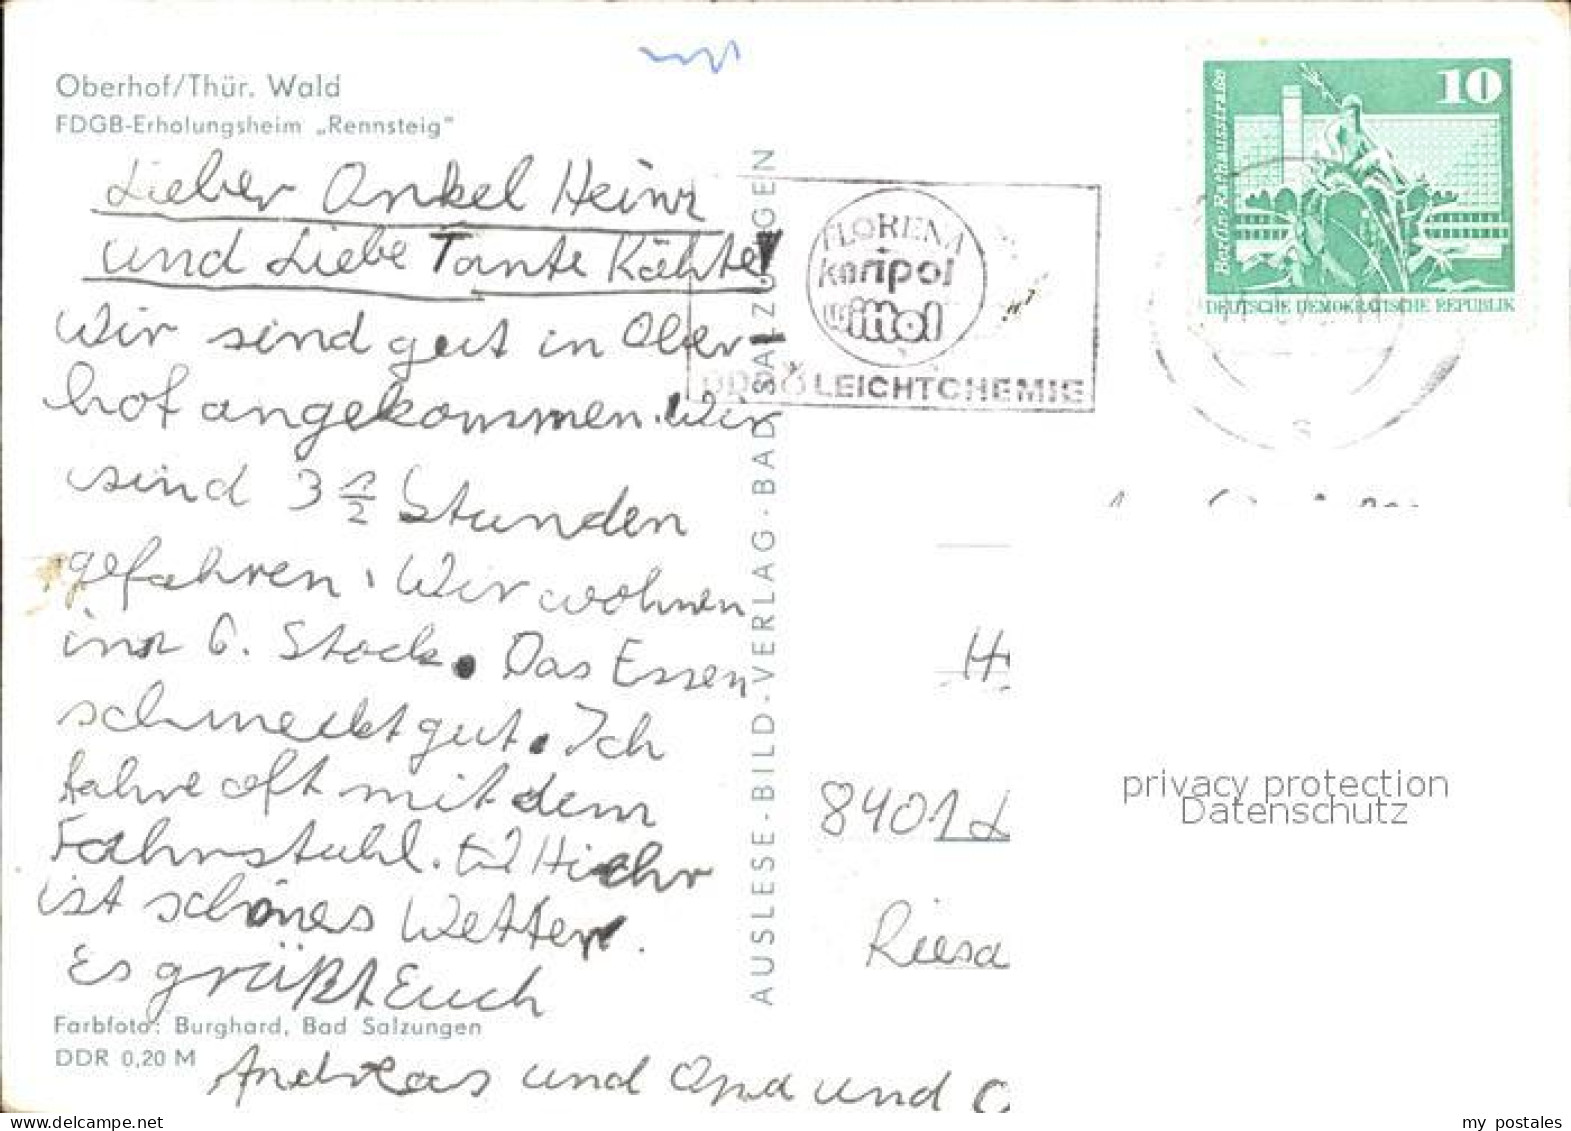 72591478 Oberhof Thueringen FDGB Erholungsheim Rennsteig Oberhof Thueringen - Oberhof